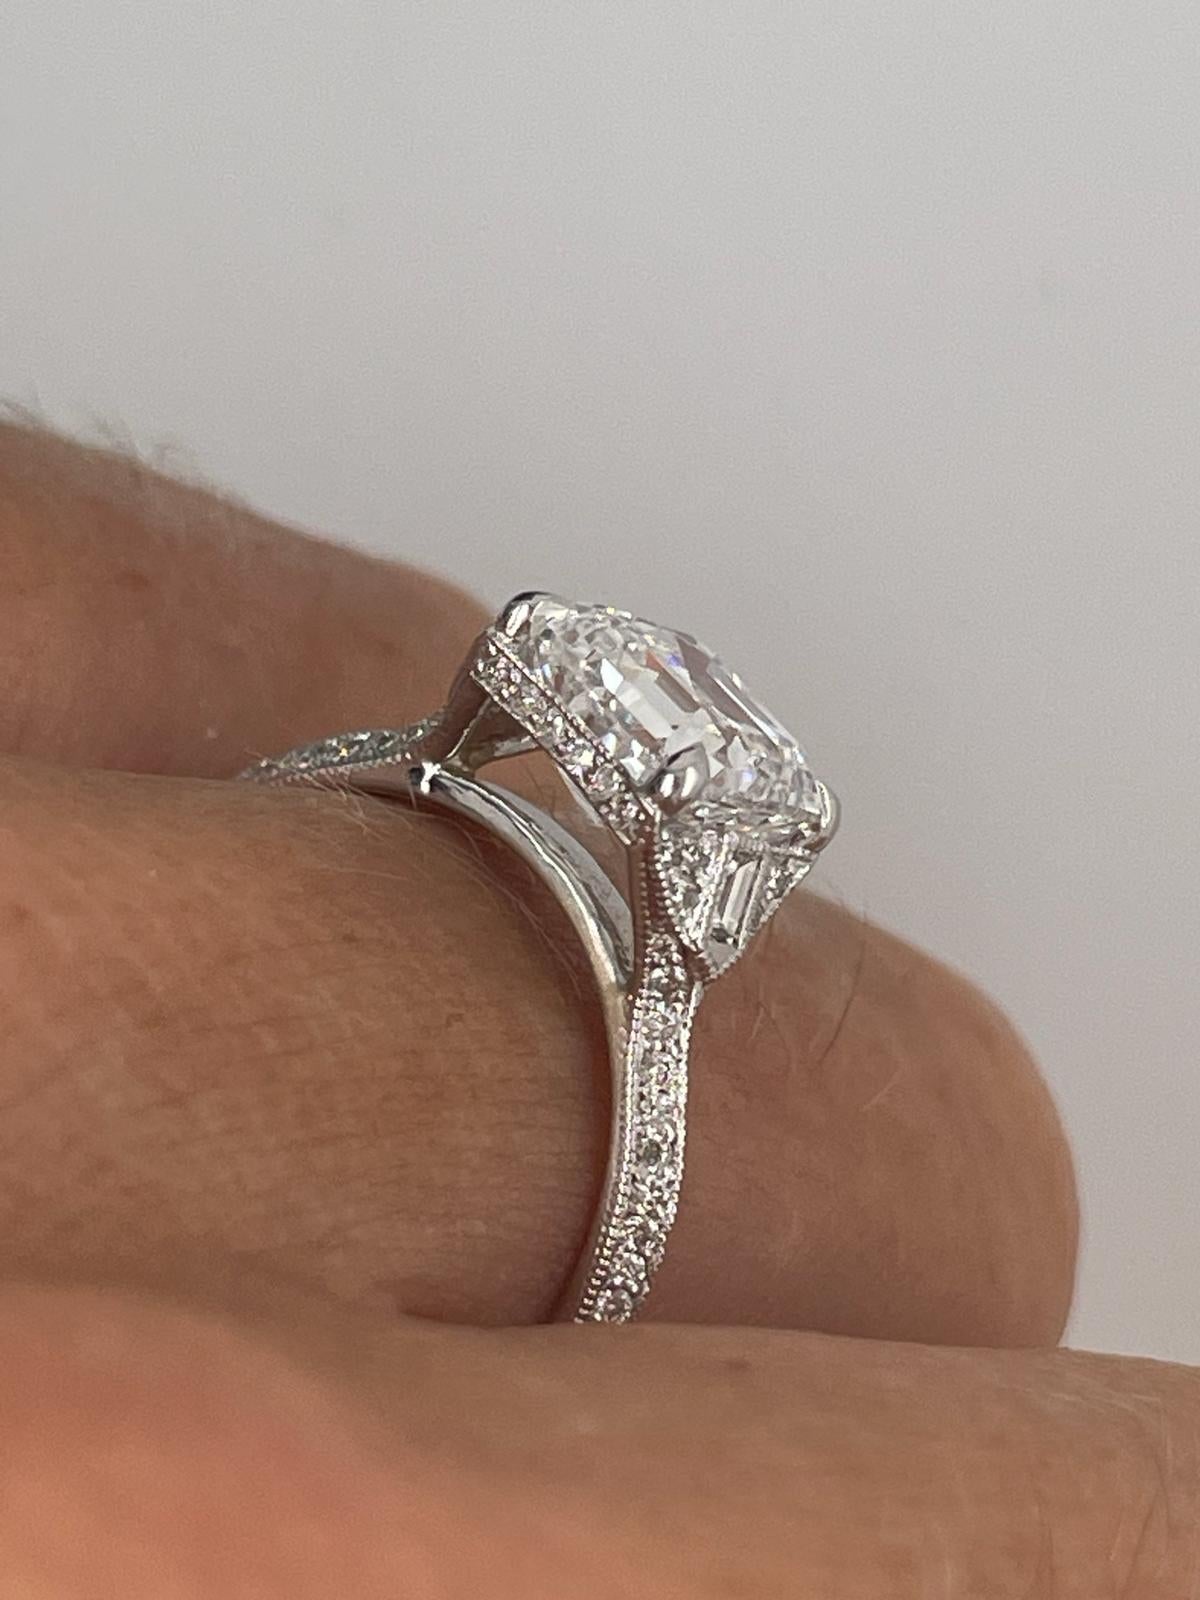 For Sale:  2ct Art Deco asscher cut diamond ring 13